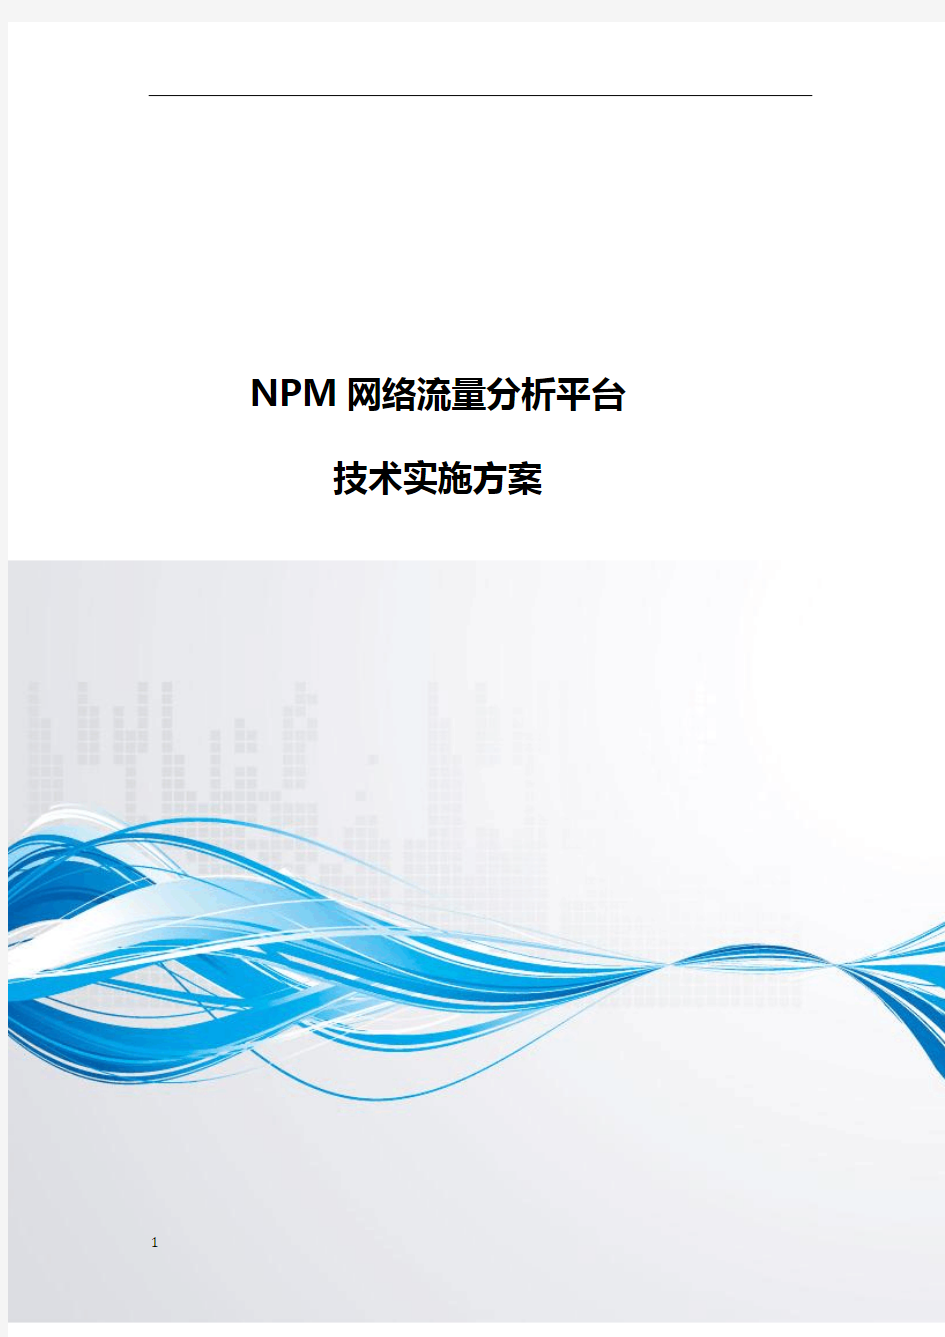 NPM网络流量分析平台技术实施方案